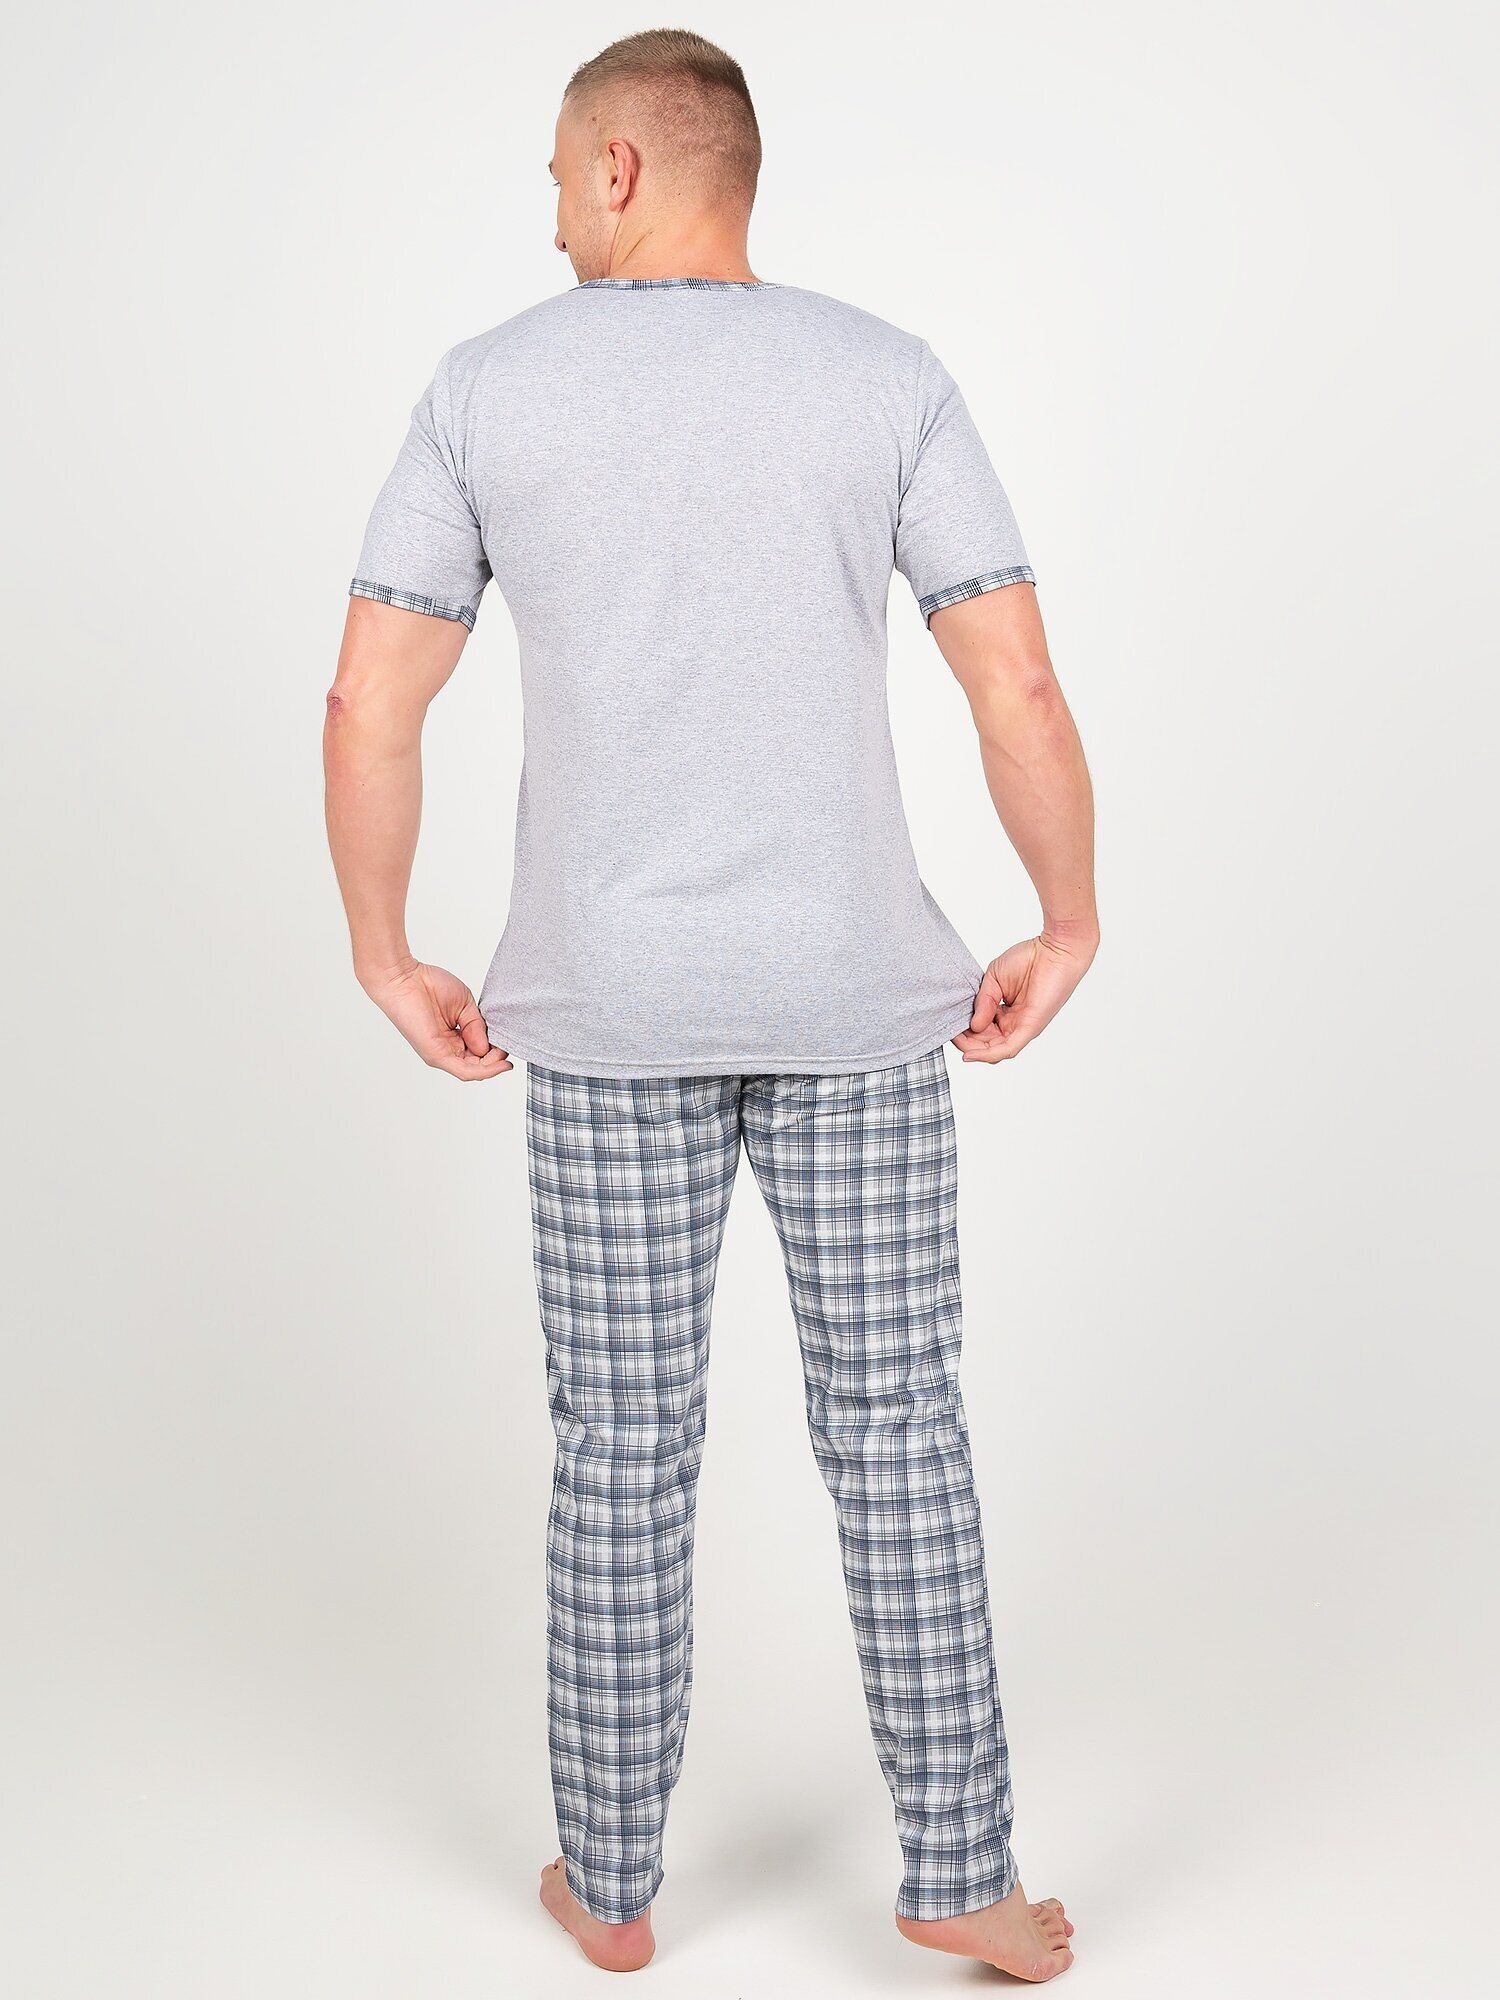 Пижама мужская, Ивелена, серая, 50 размер - фотография № 9